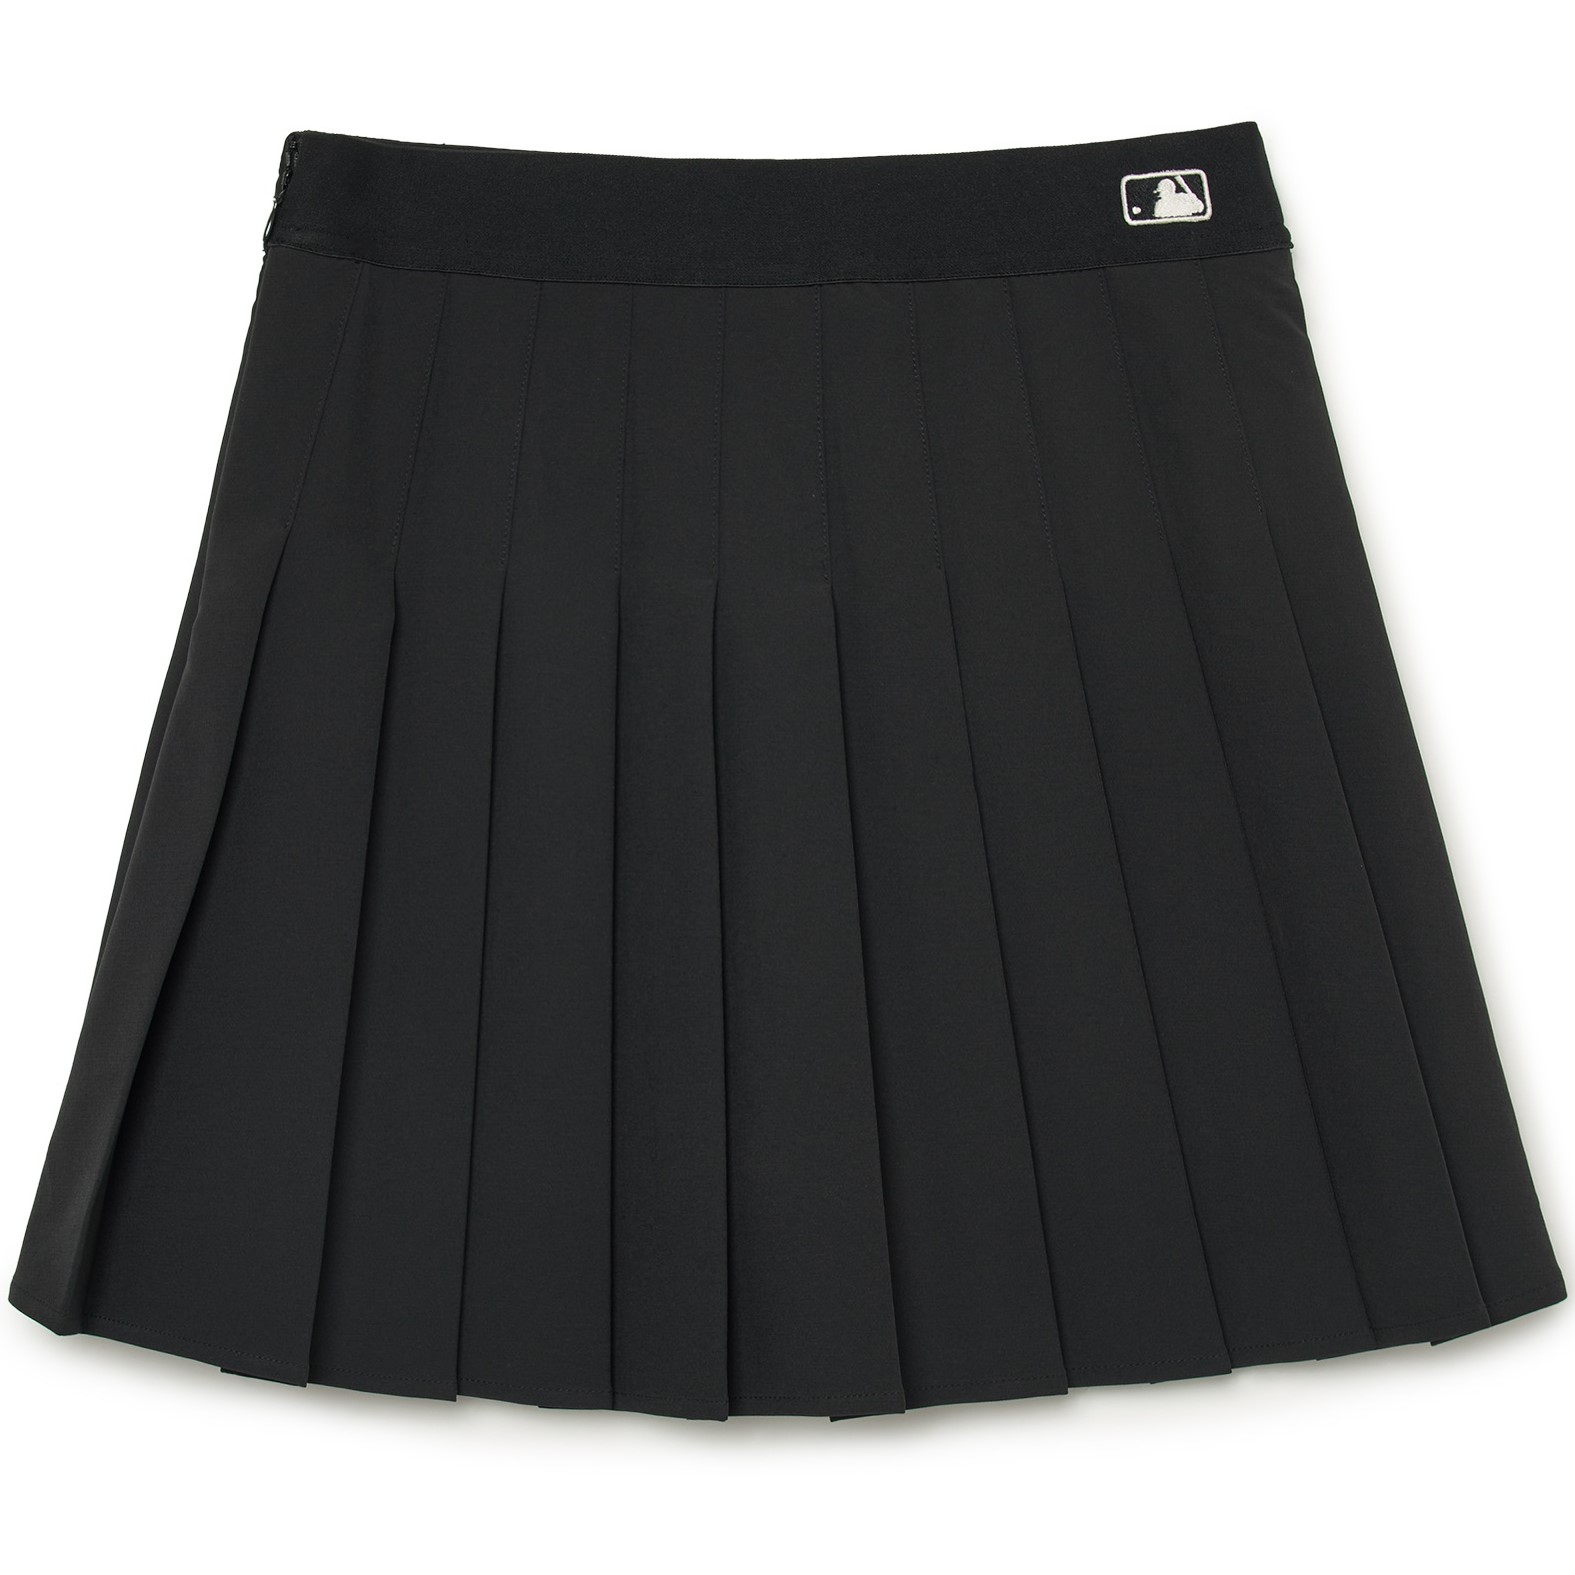 Chân Váy Xếp Ly HQJeans Tennis Skirt Chữ A Dáng Ngắn Thiết kế Xếp Ly Đ